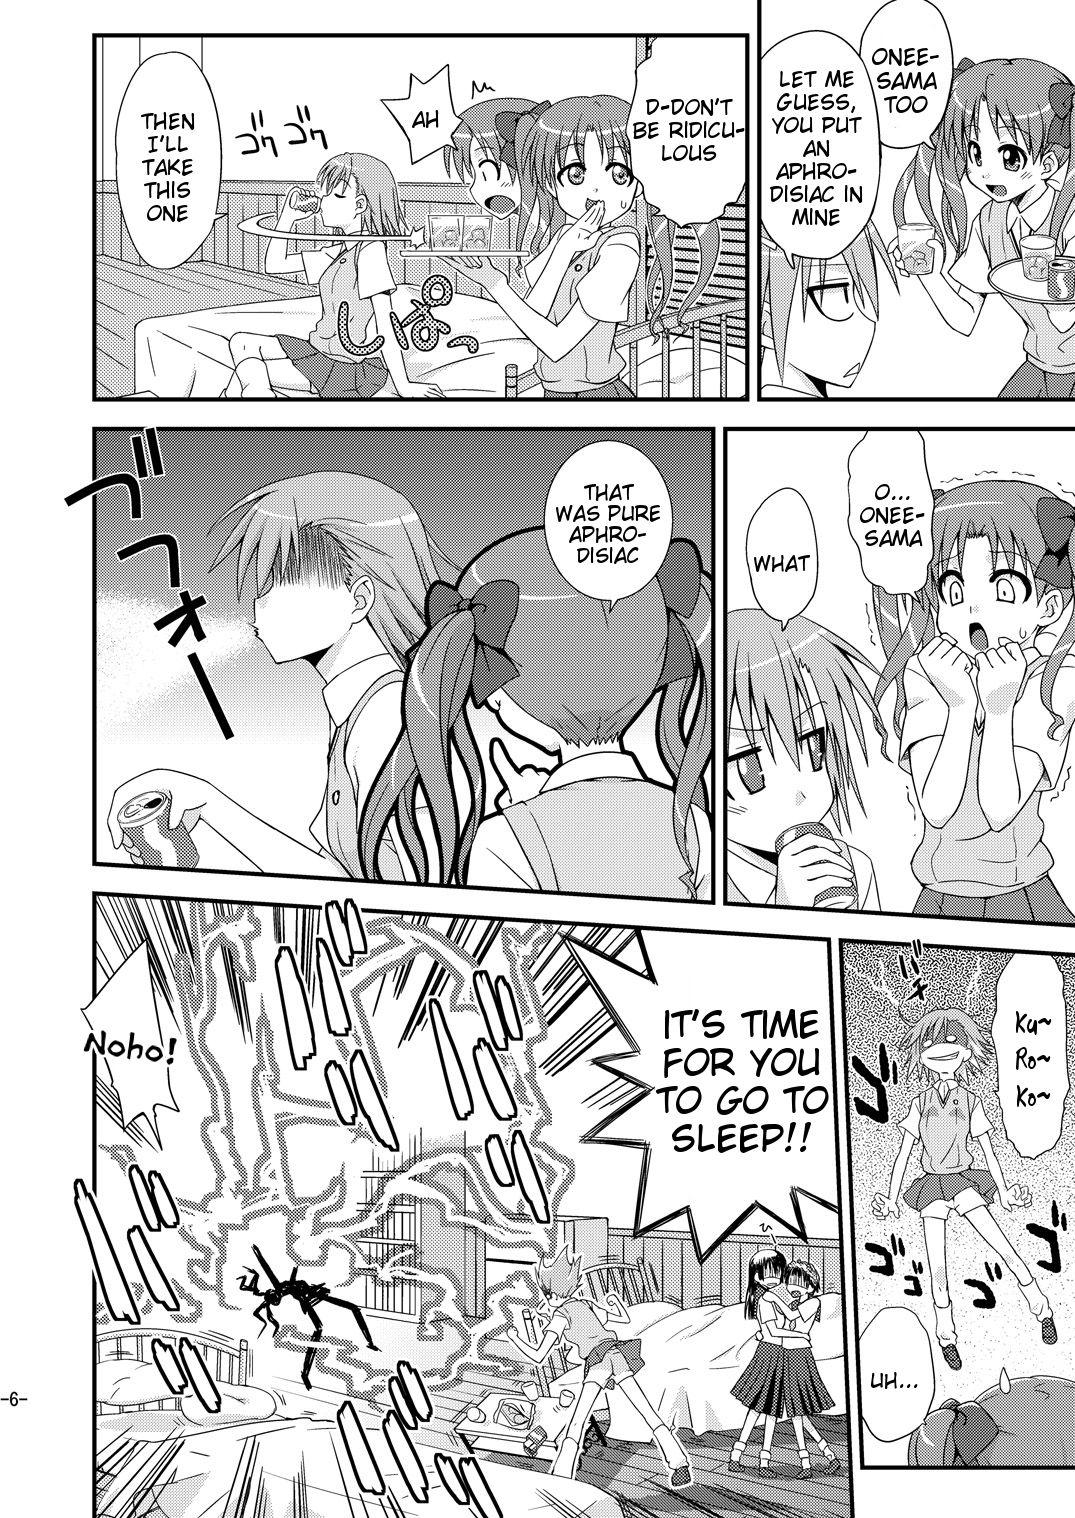 Tight Cunt Toaru Biyaku de Splash - Toaru kagaku no railgun Massages - Page 5